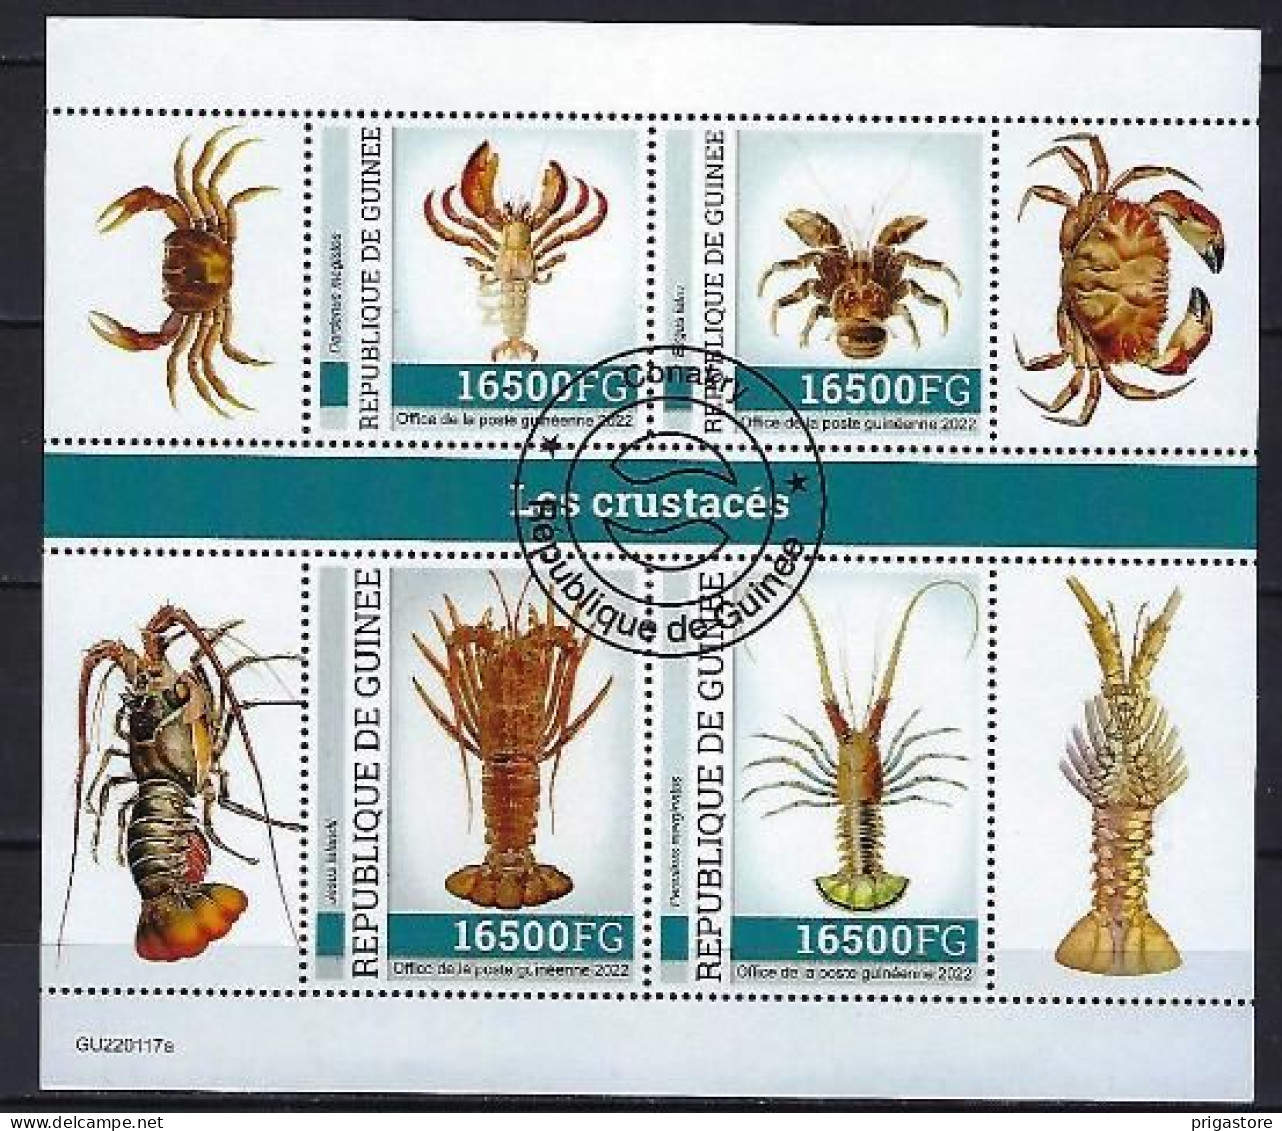 Animaux Crustacés Guinée 2022 (395) Yvert N° 11593 à 11596 Oblitérés Used - Crustaceans